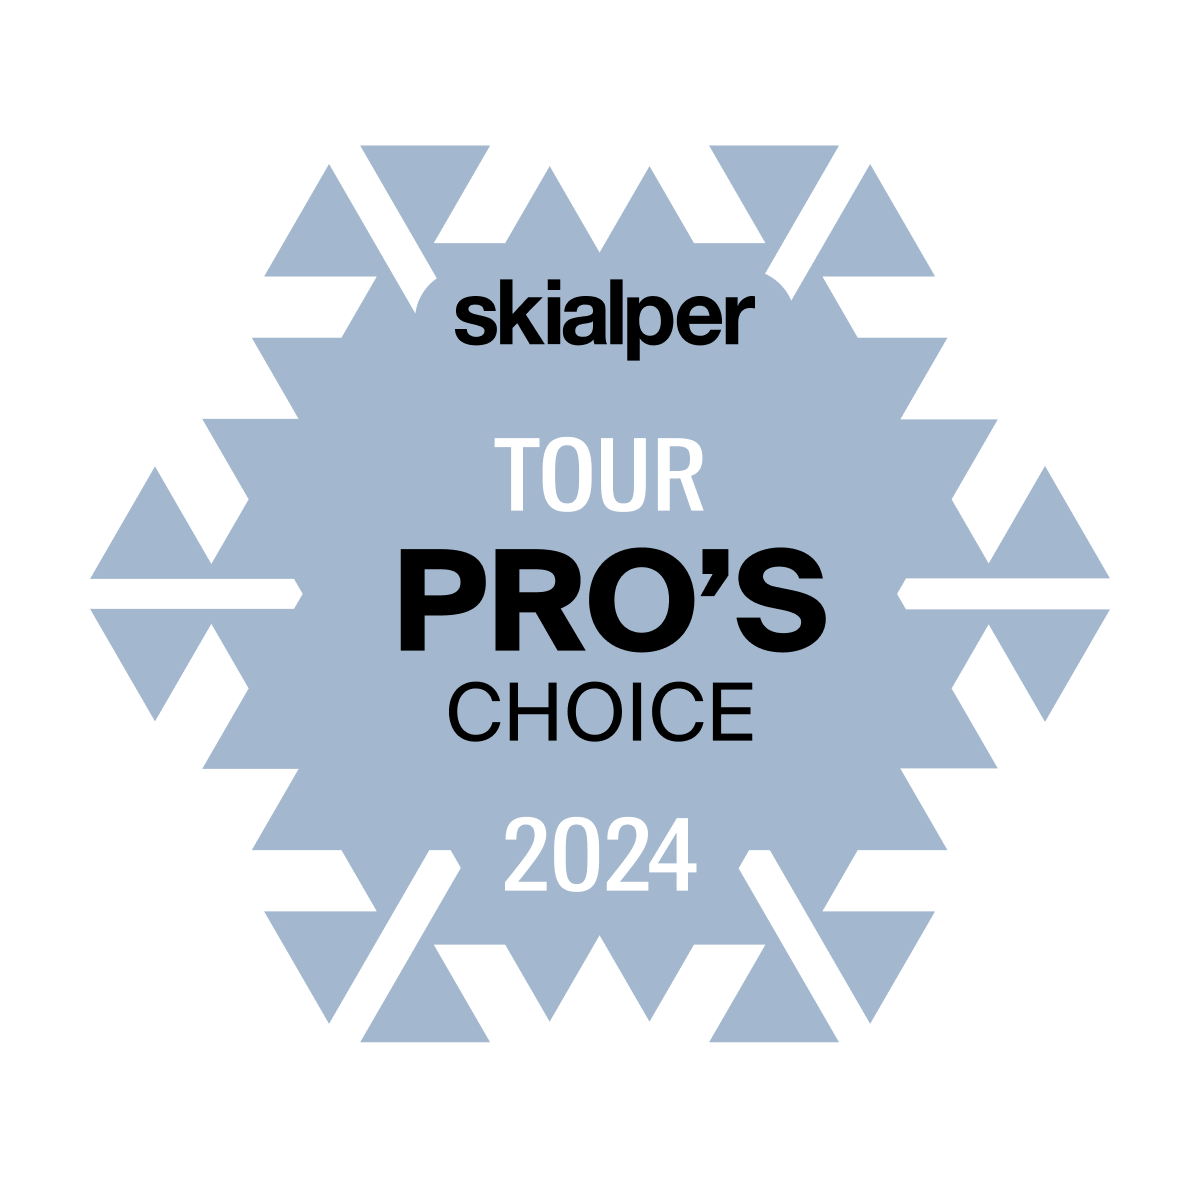 Pro's choice Tour